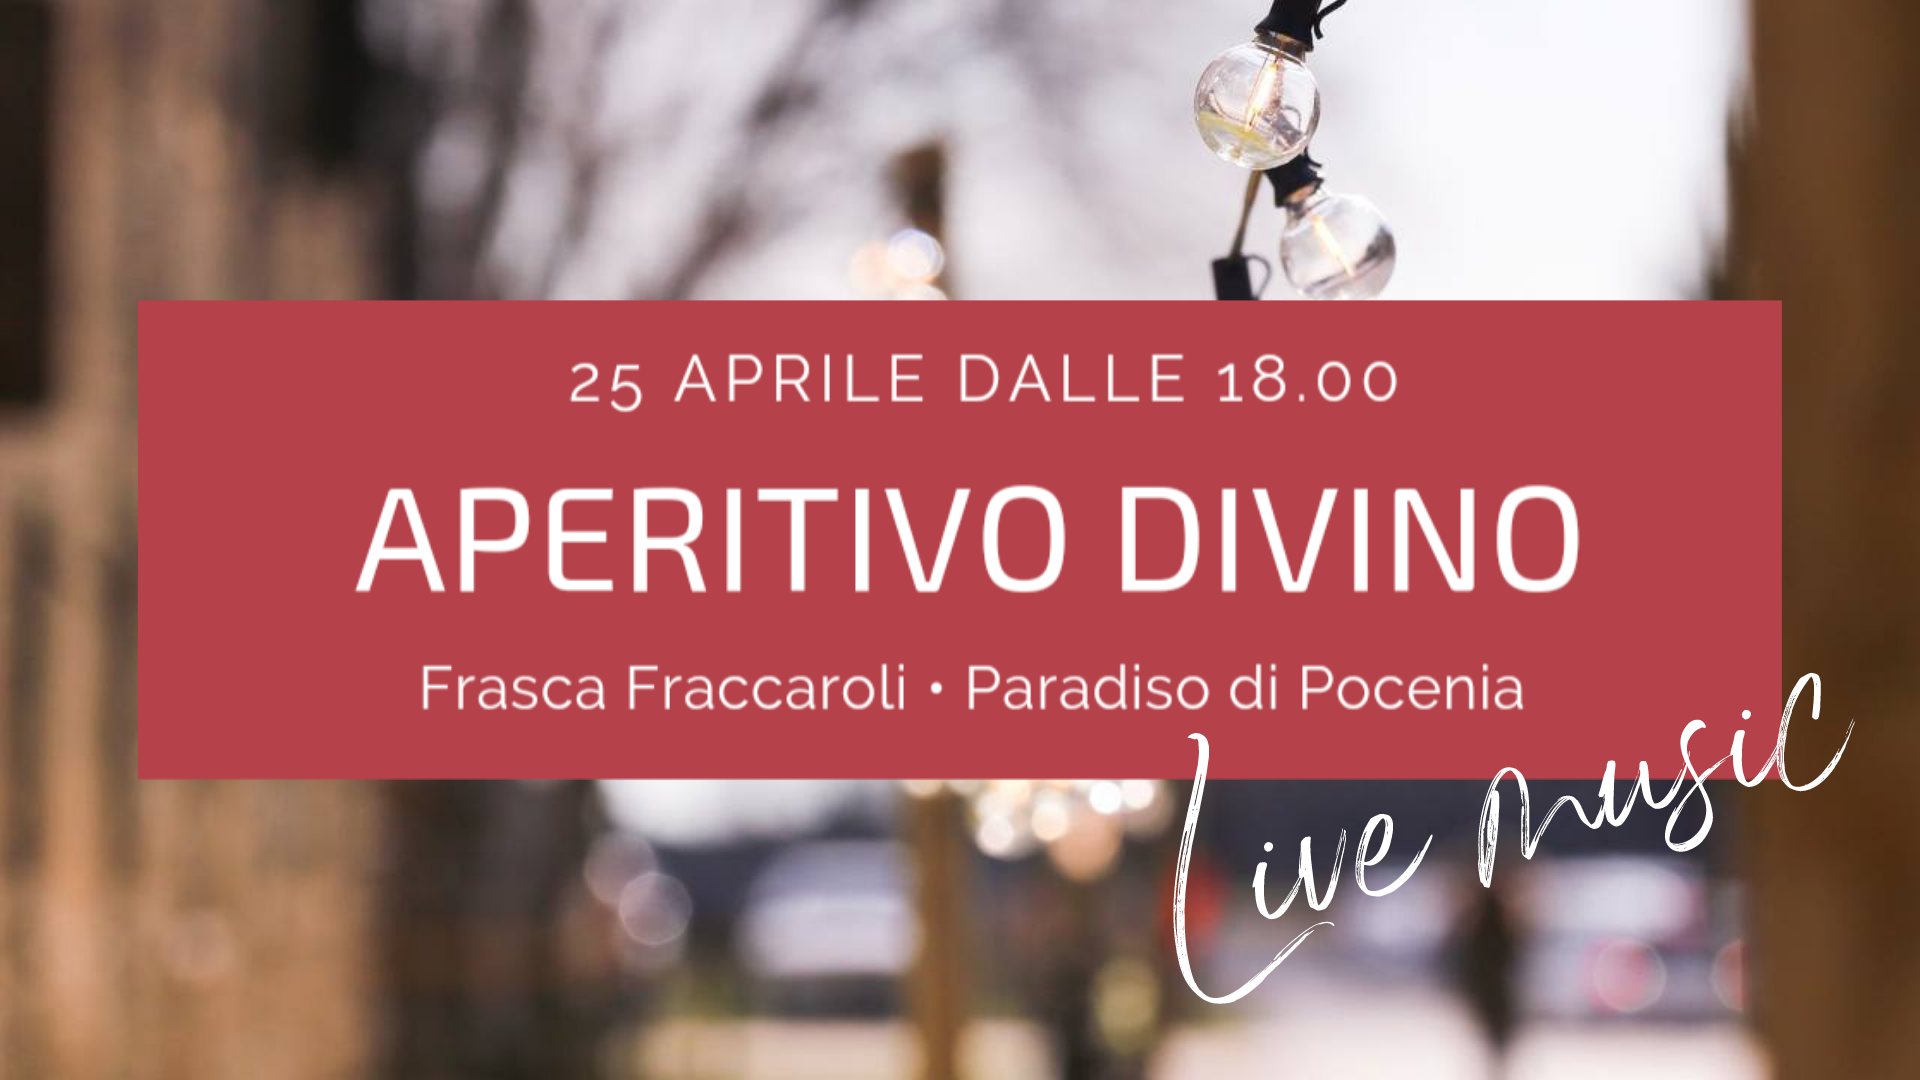 Aperitivo DiVino in Frasca Fraccaroli